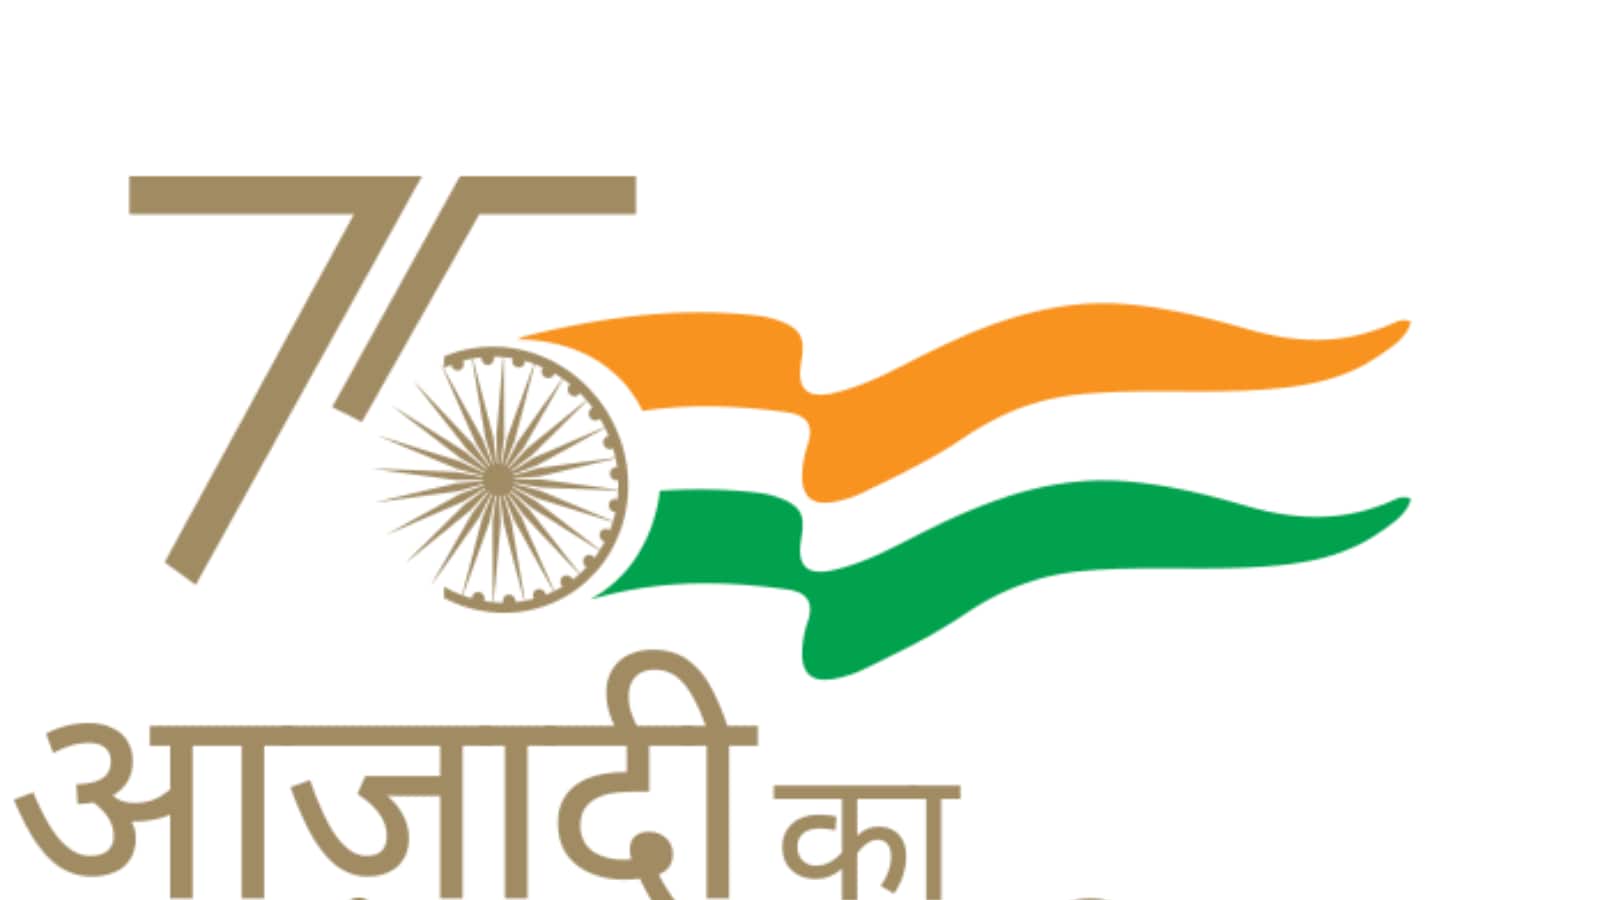 How to draw 75th Anniversary of Indian Independence / Azadi Ka Amrit  Mahotsav Logo